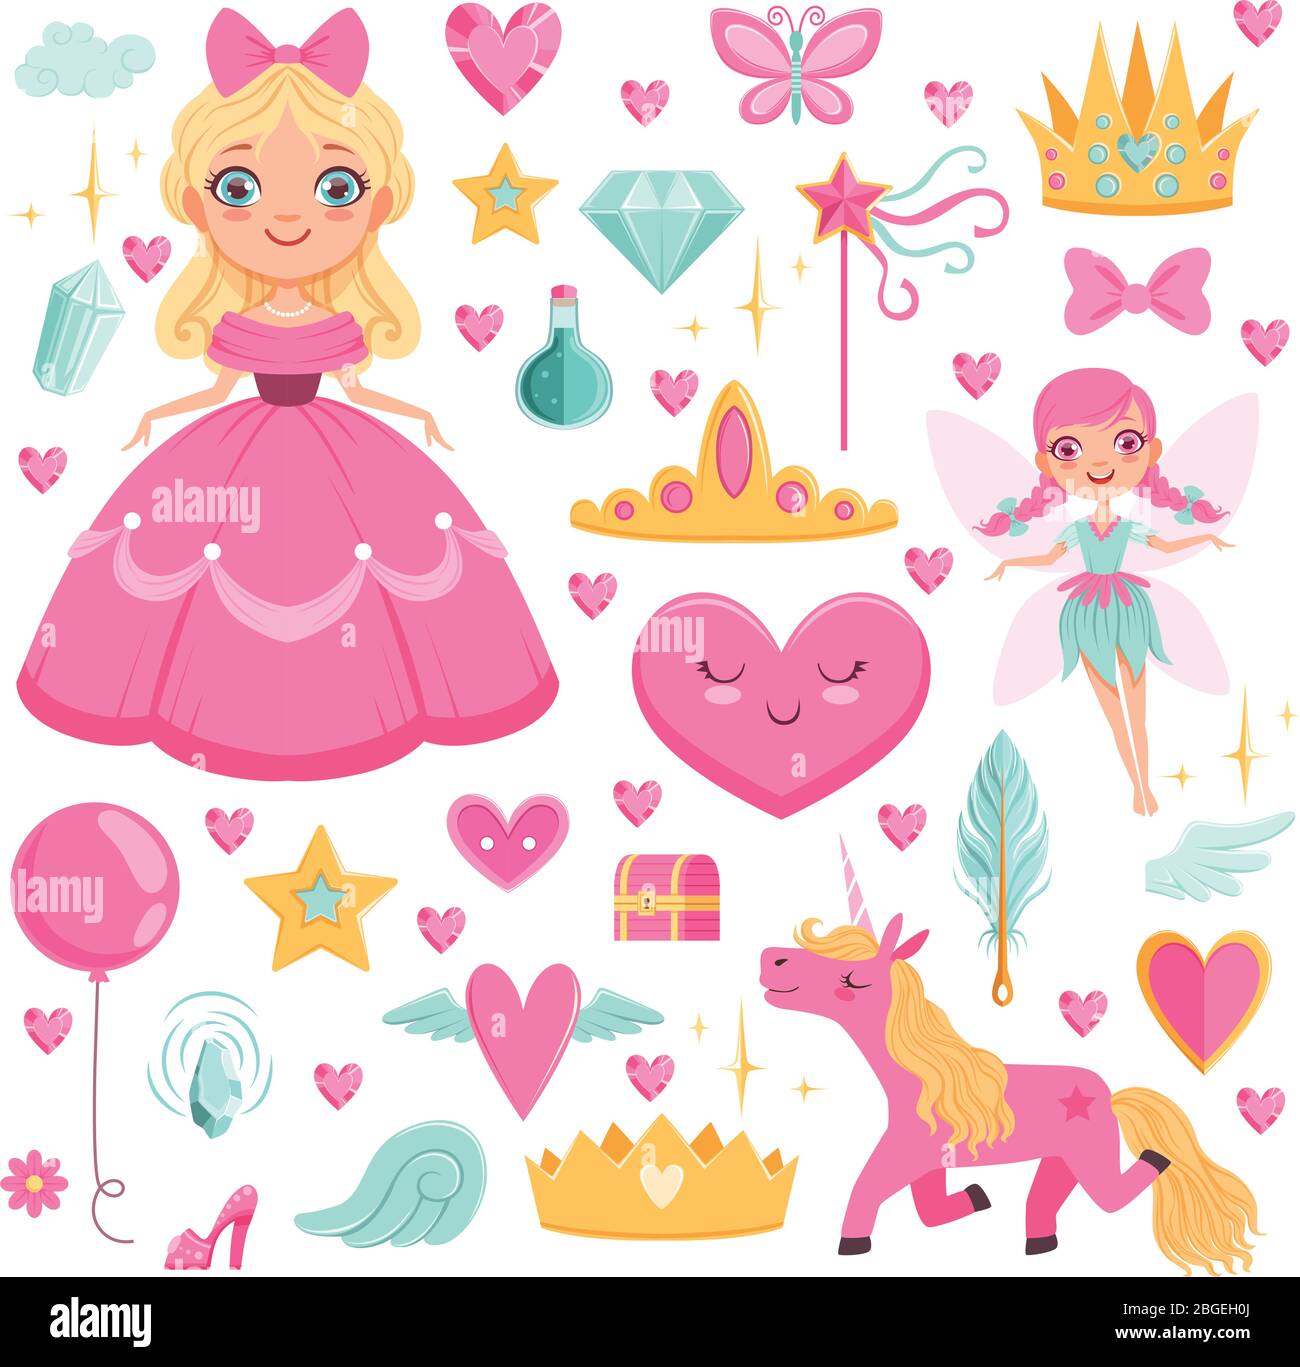 Princesa con unicornio de cuento de hadas, mago y sus elementos mágicos. Conjunto de imágenes vectoriales Ilustración del Vector